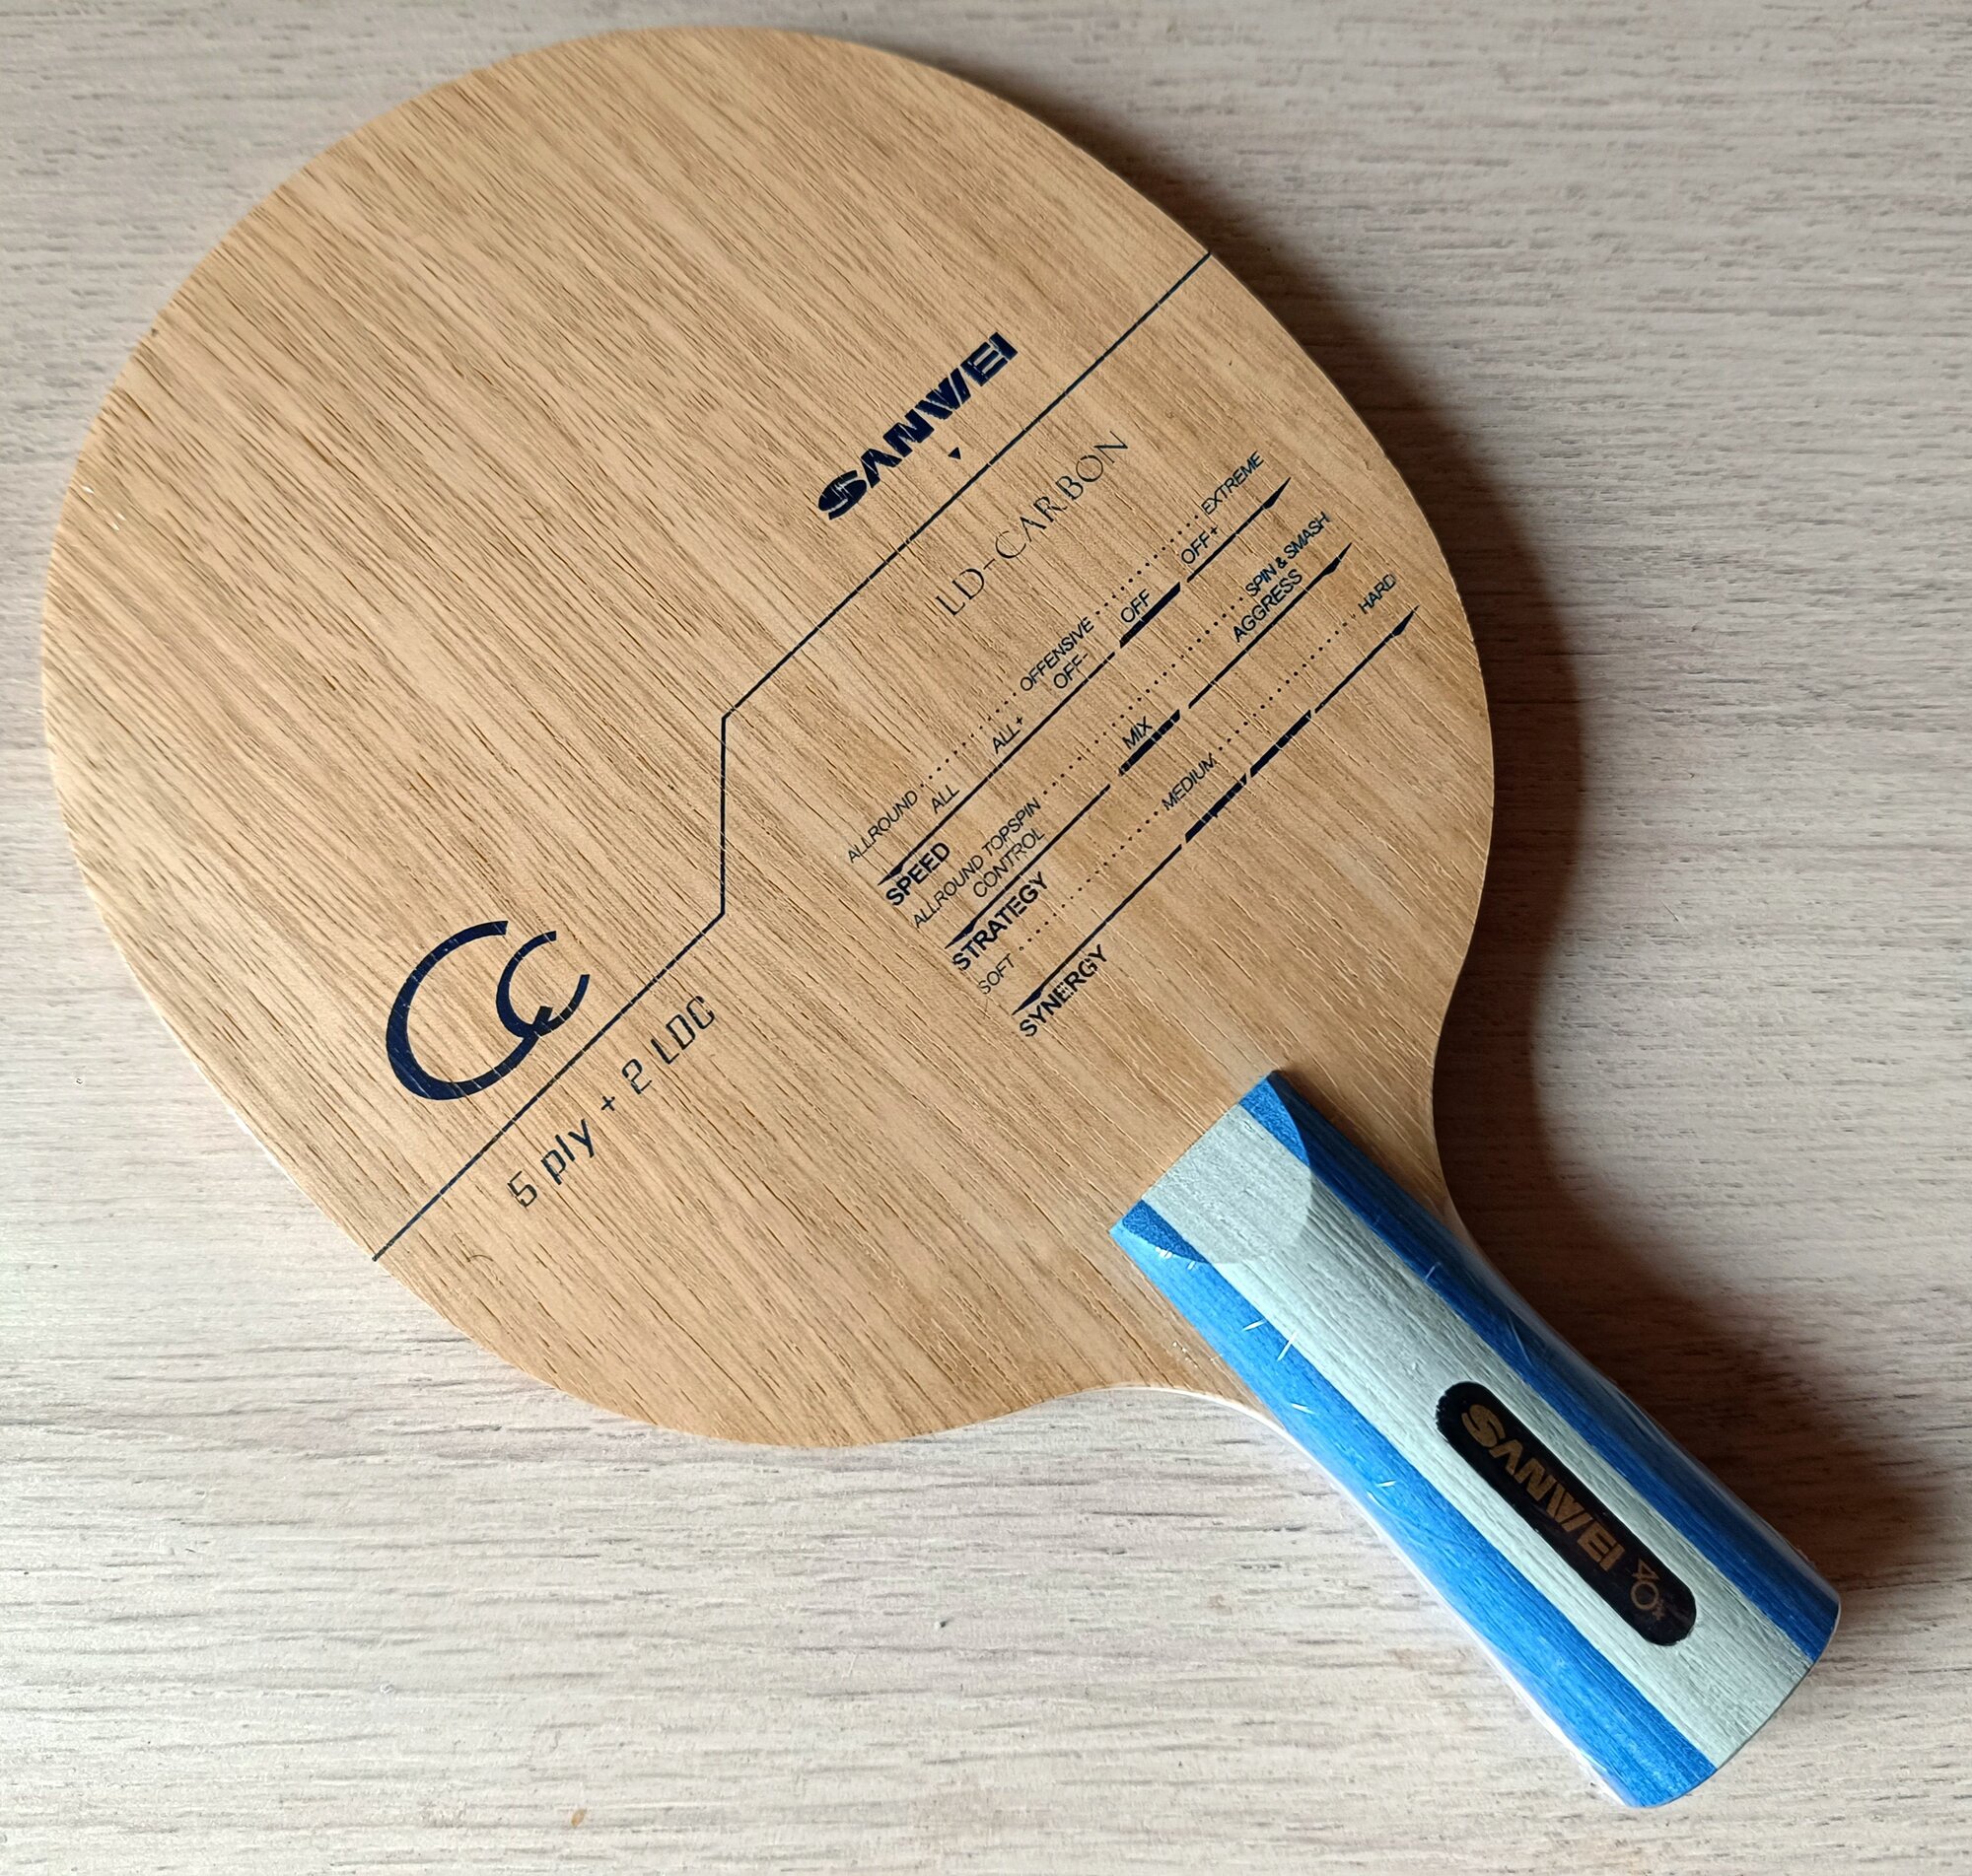 Основание для ракетки настольного тенниса Sanwei CC carbon - рукоять CS